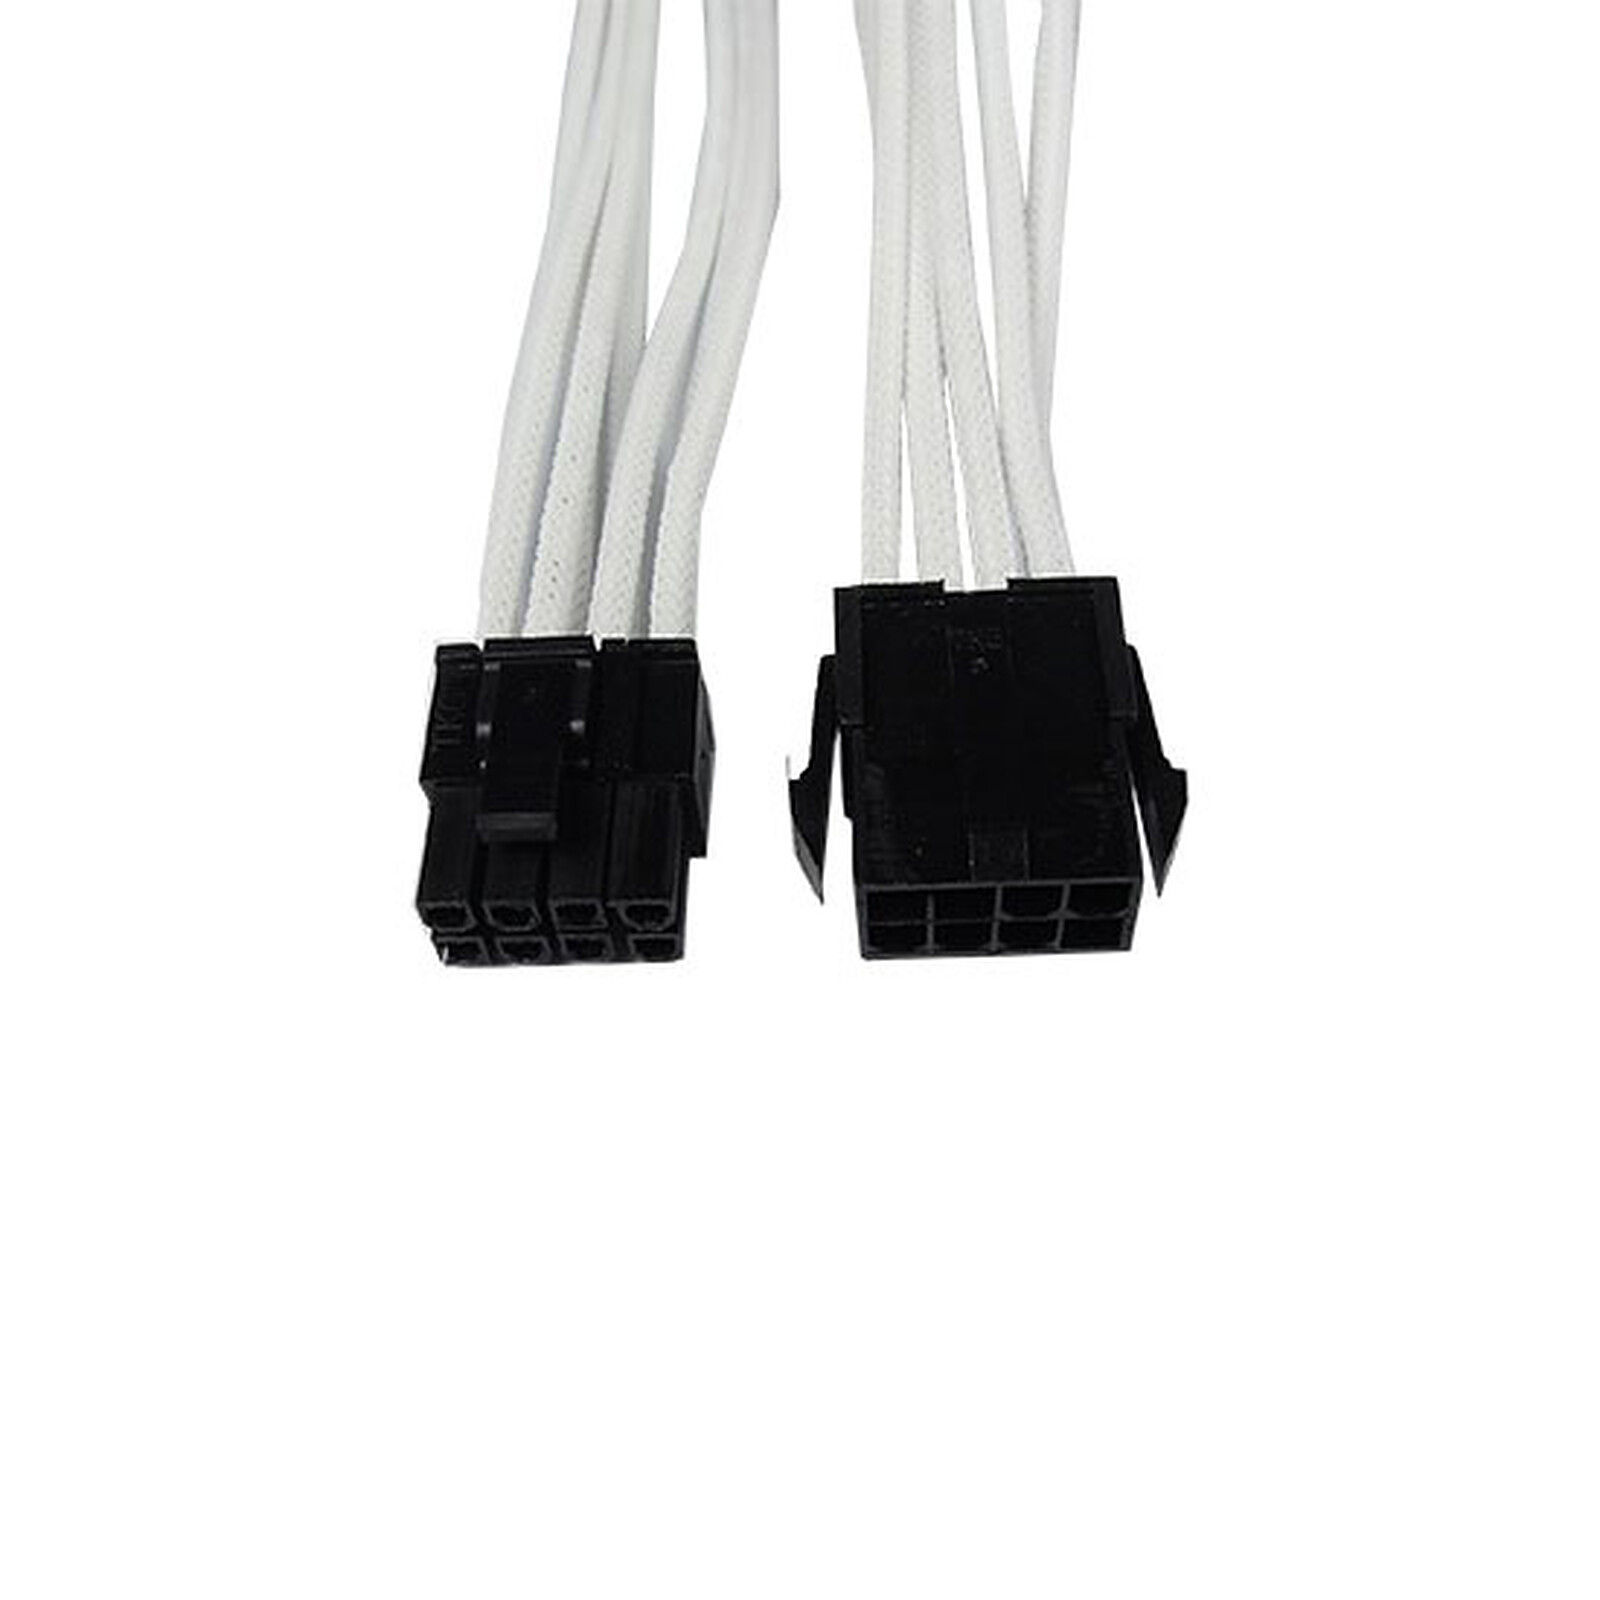 Gelid Câble Tressé PCIe 6+2 broches 30 cm (Noir) - Alimentation